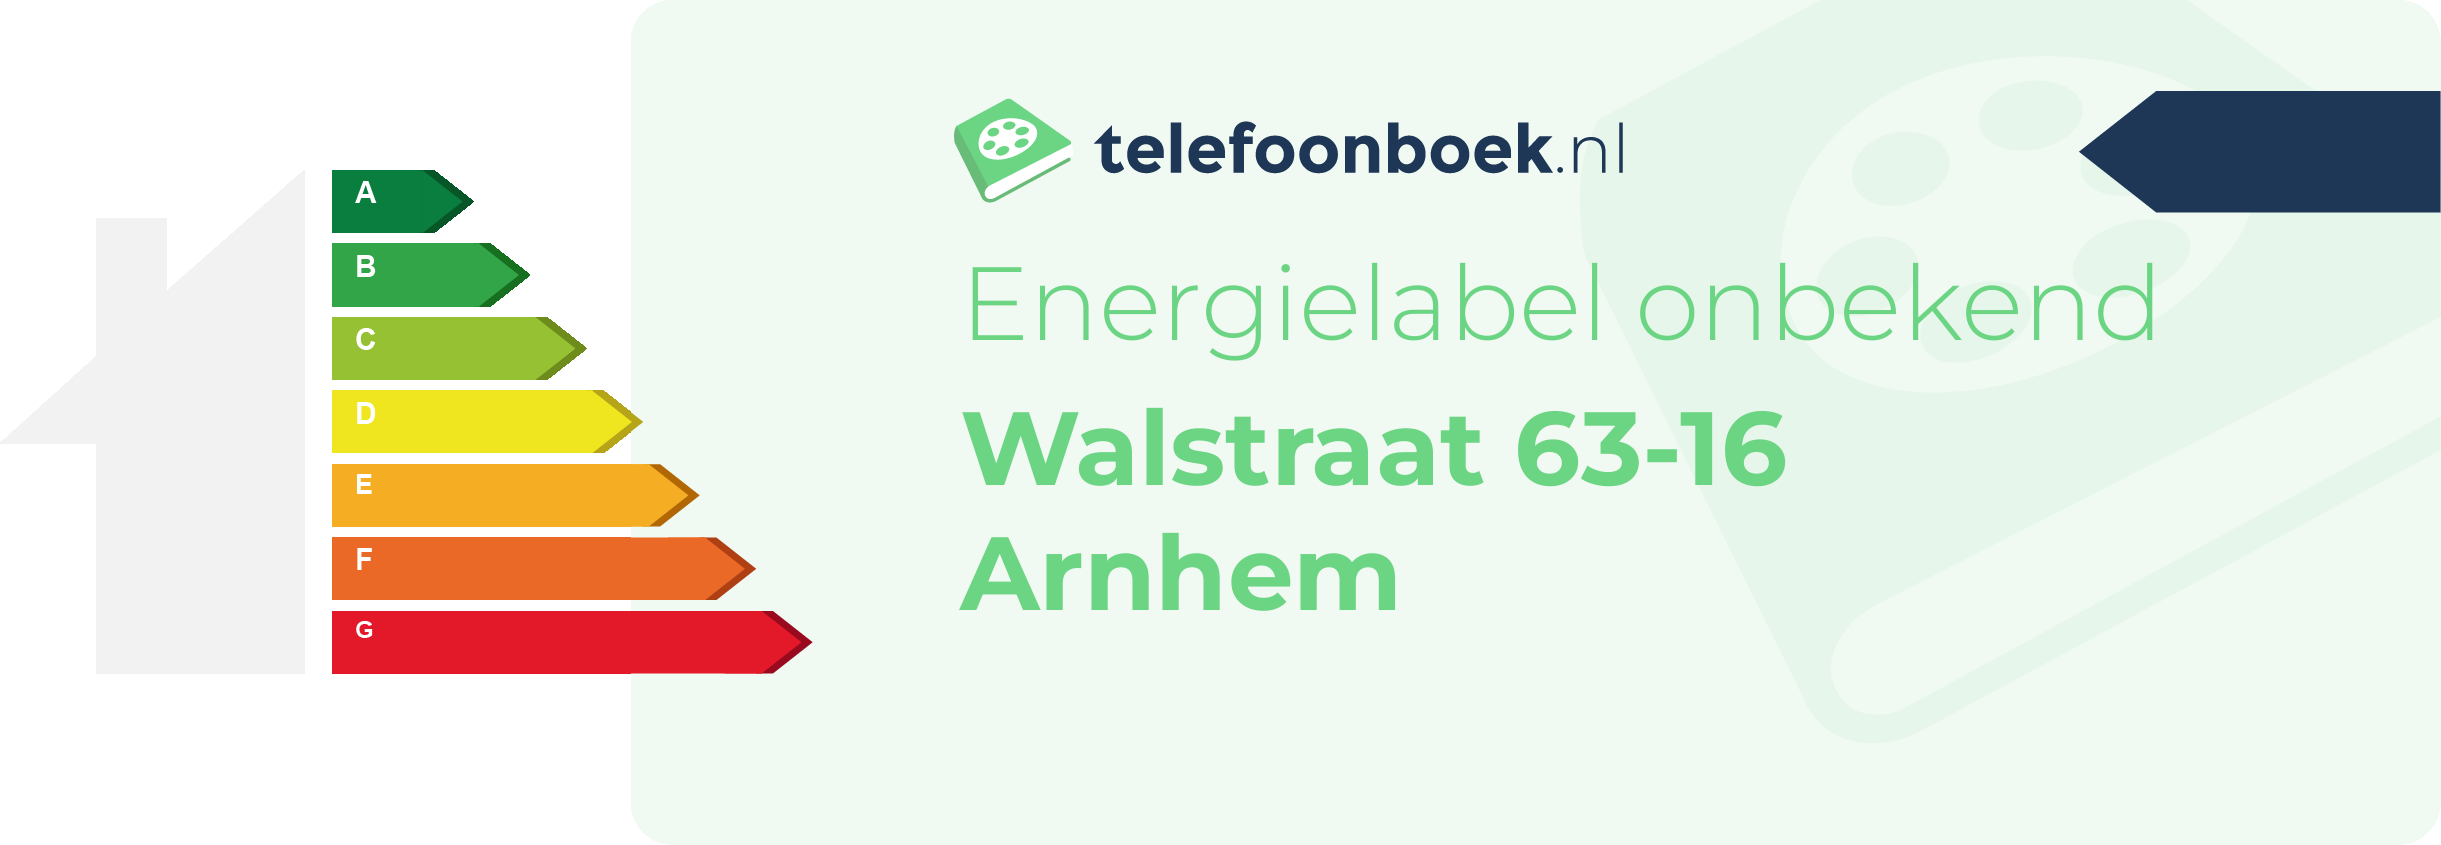 Energielabel Walstraat 63-16 Arnhem